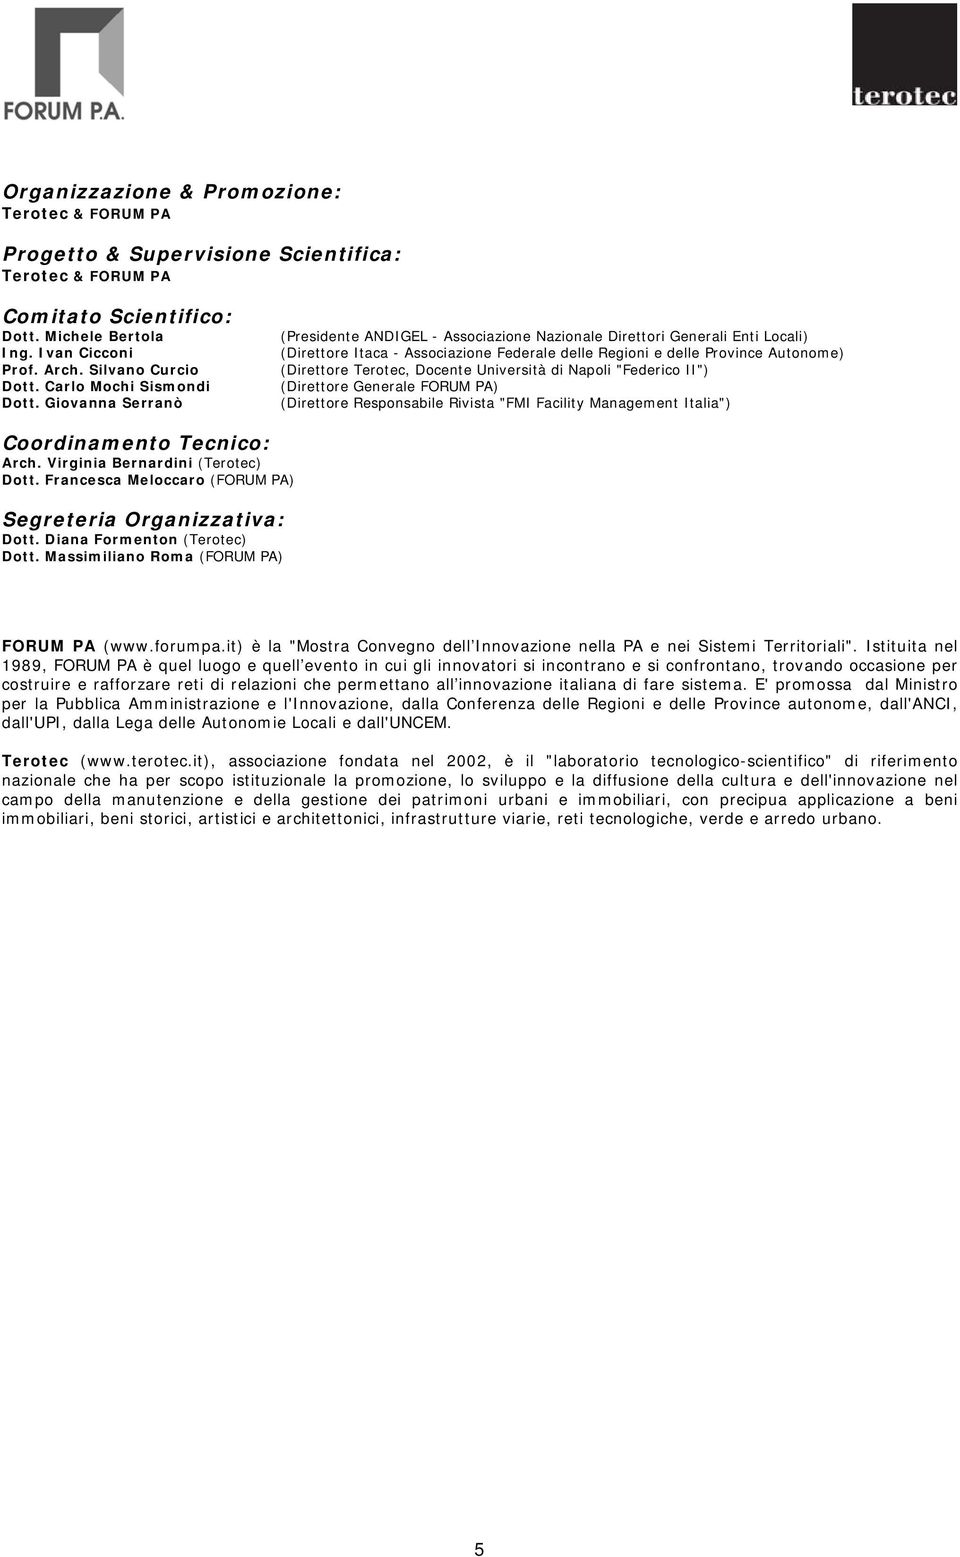 Docente Università di Napoli "Federico II") (Direttore Generale FORUM PA) (Direttore Responsabile Rivista "FMI Facility Management Italia") Coordinamento Tecnico: Arch.